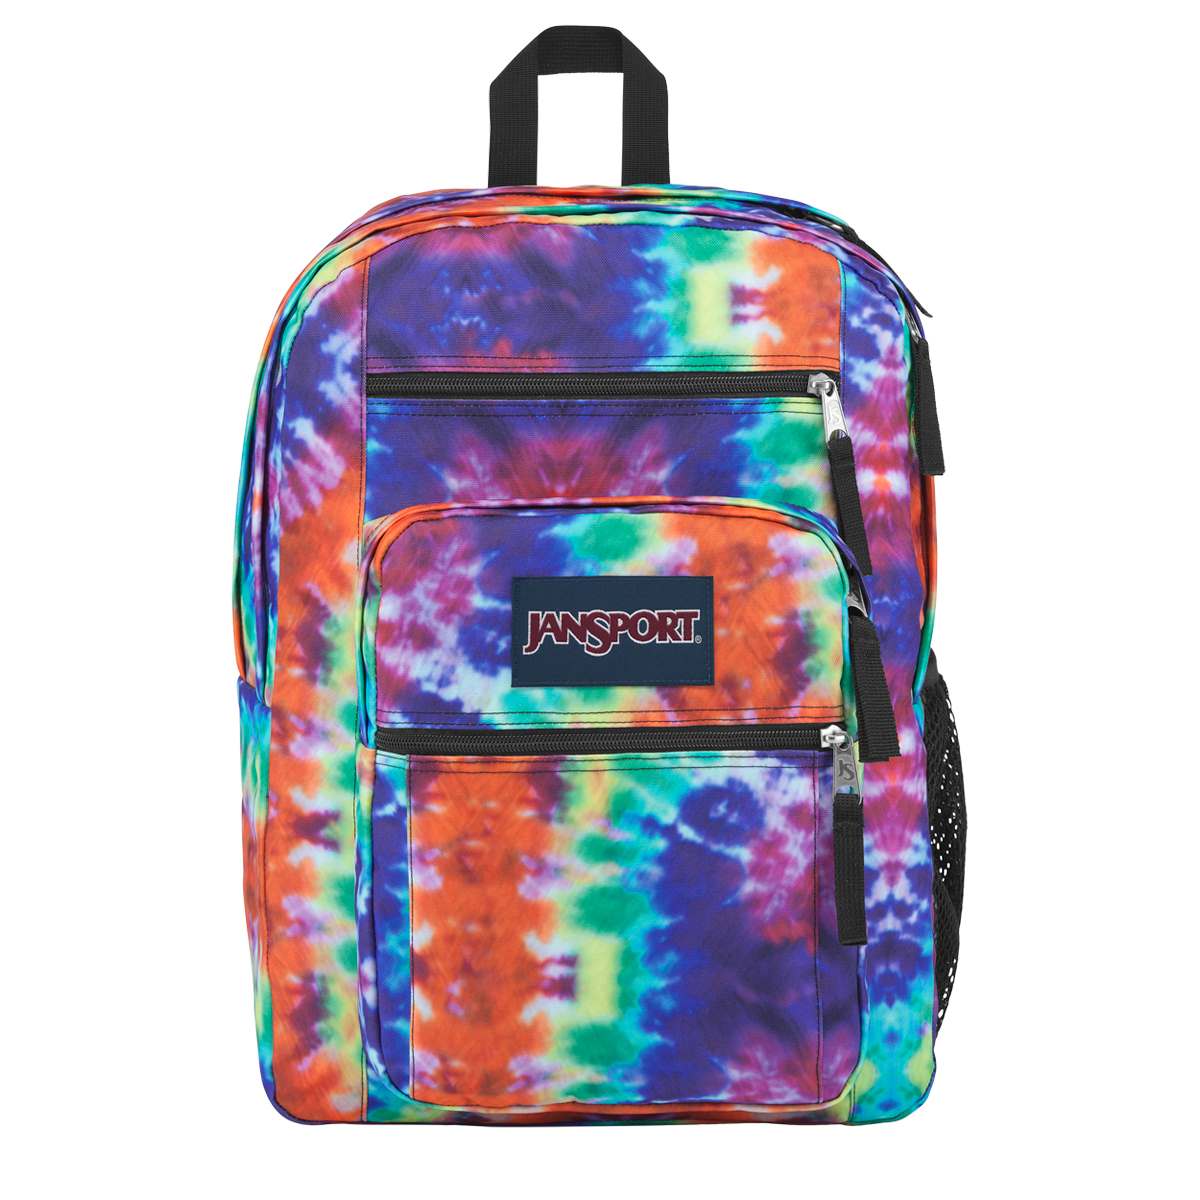 JanSport(R) Big Student Backpack - Hippie